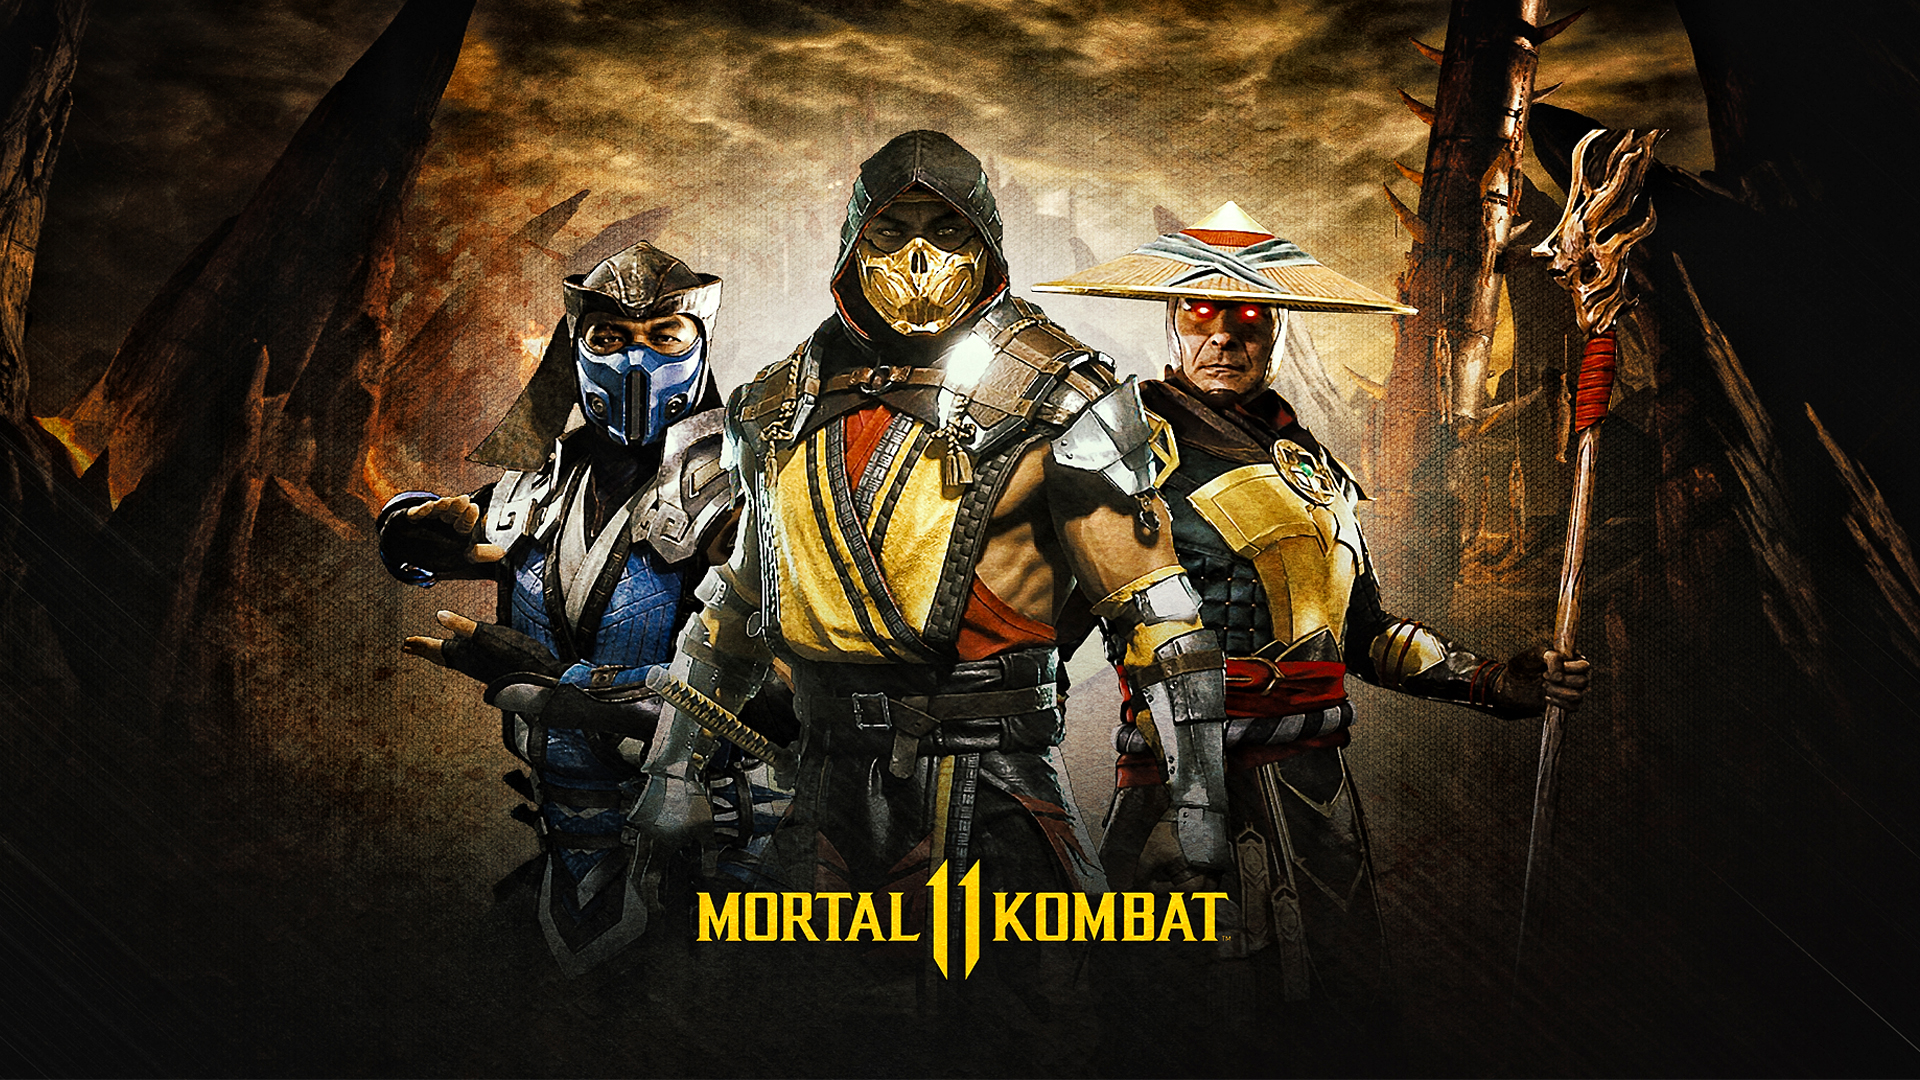 Mortal kombat x updates steam фото 17